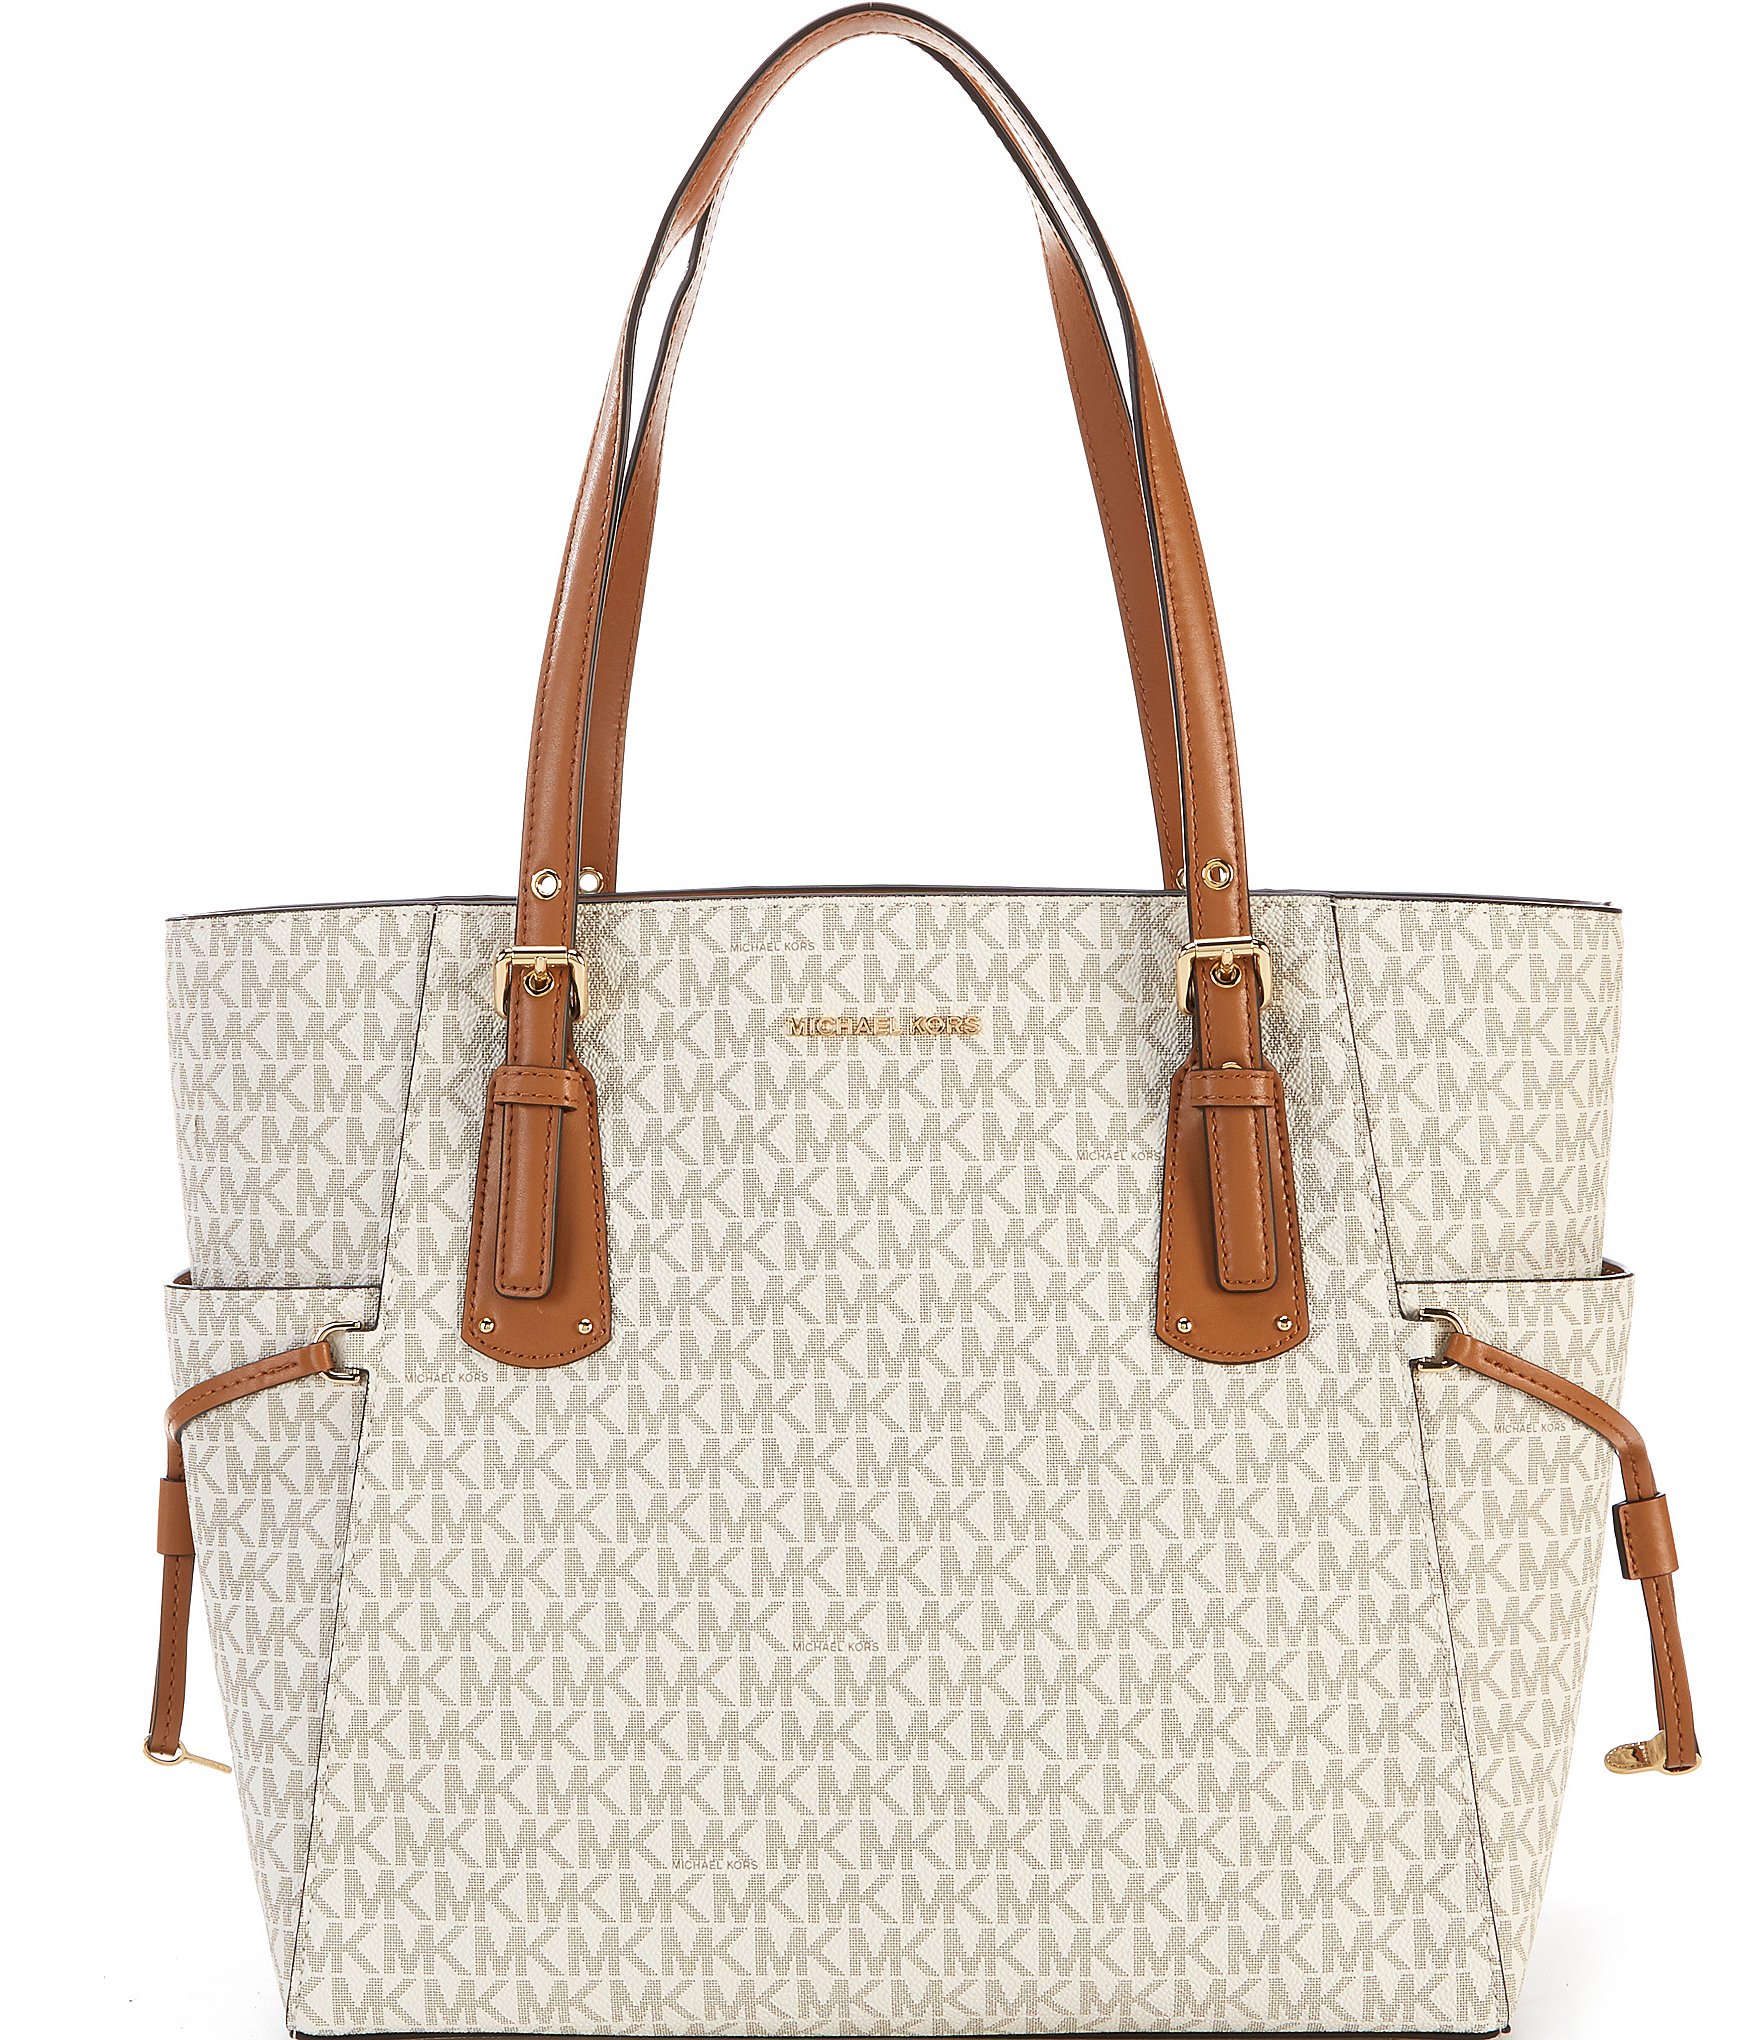 Buy White Handbags for Women by Michael Kors Online